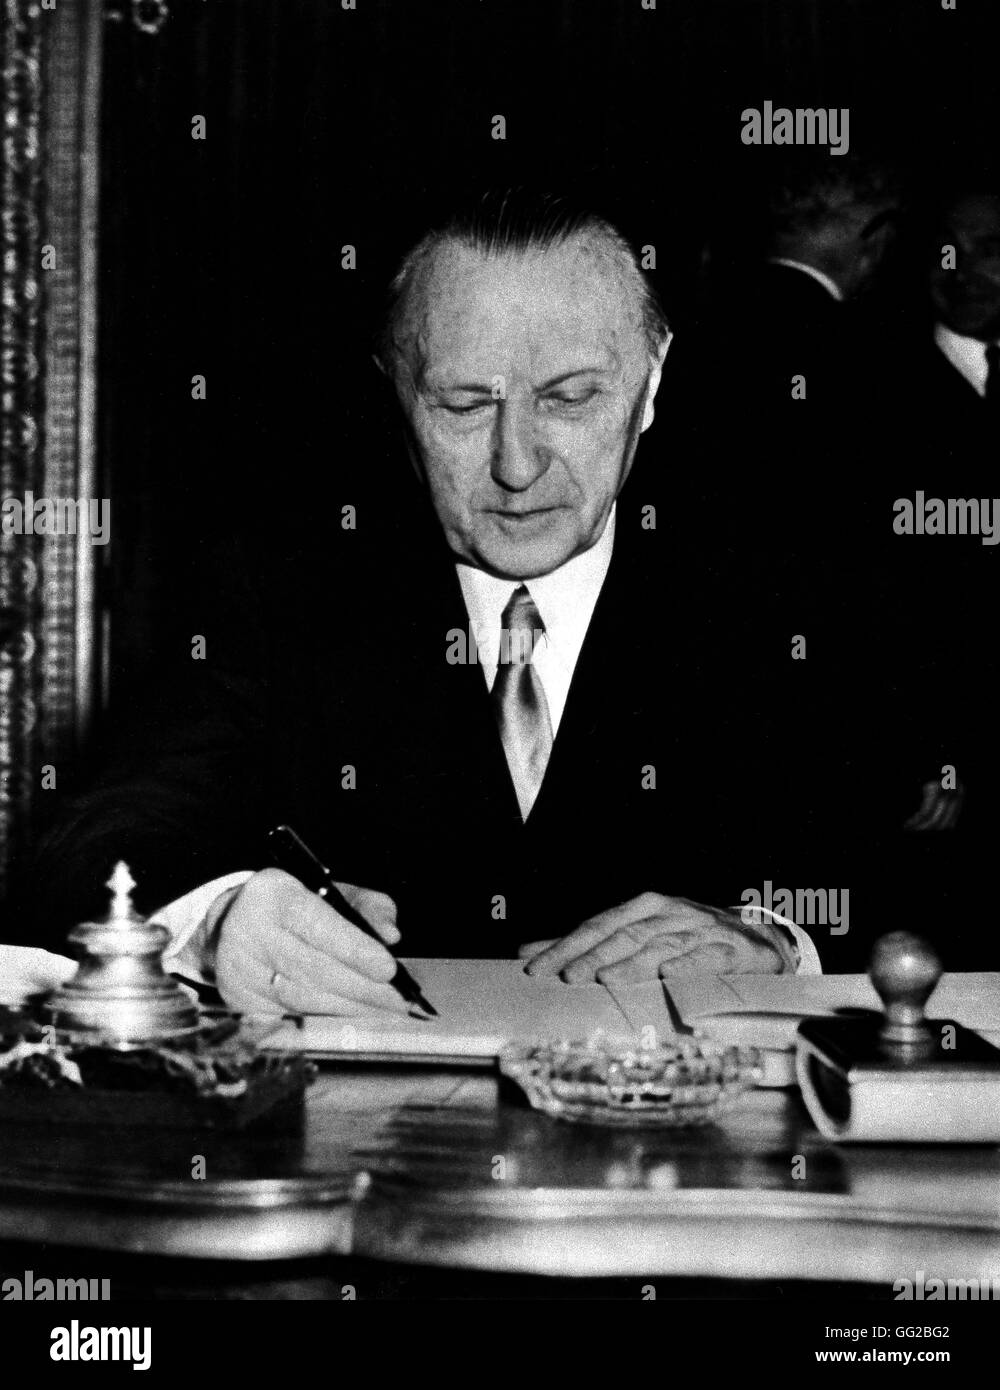 Konferenz in Paris: Adenauer unterzeichnen den Schuman-Plan-Erklärung. Gründung der Europäischen Gemeinschaft für Kohle und Stahl (mit Italien, Belgien, Niederlande, Luxemburg, BRD, Frankreich) April 1951 Frankreich National Archives, Washington Stockfoto